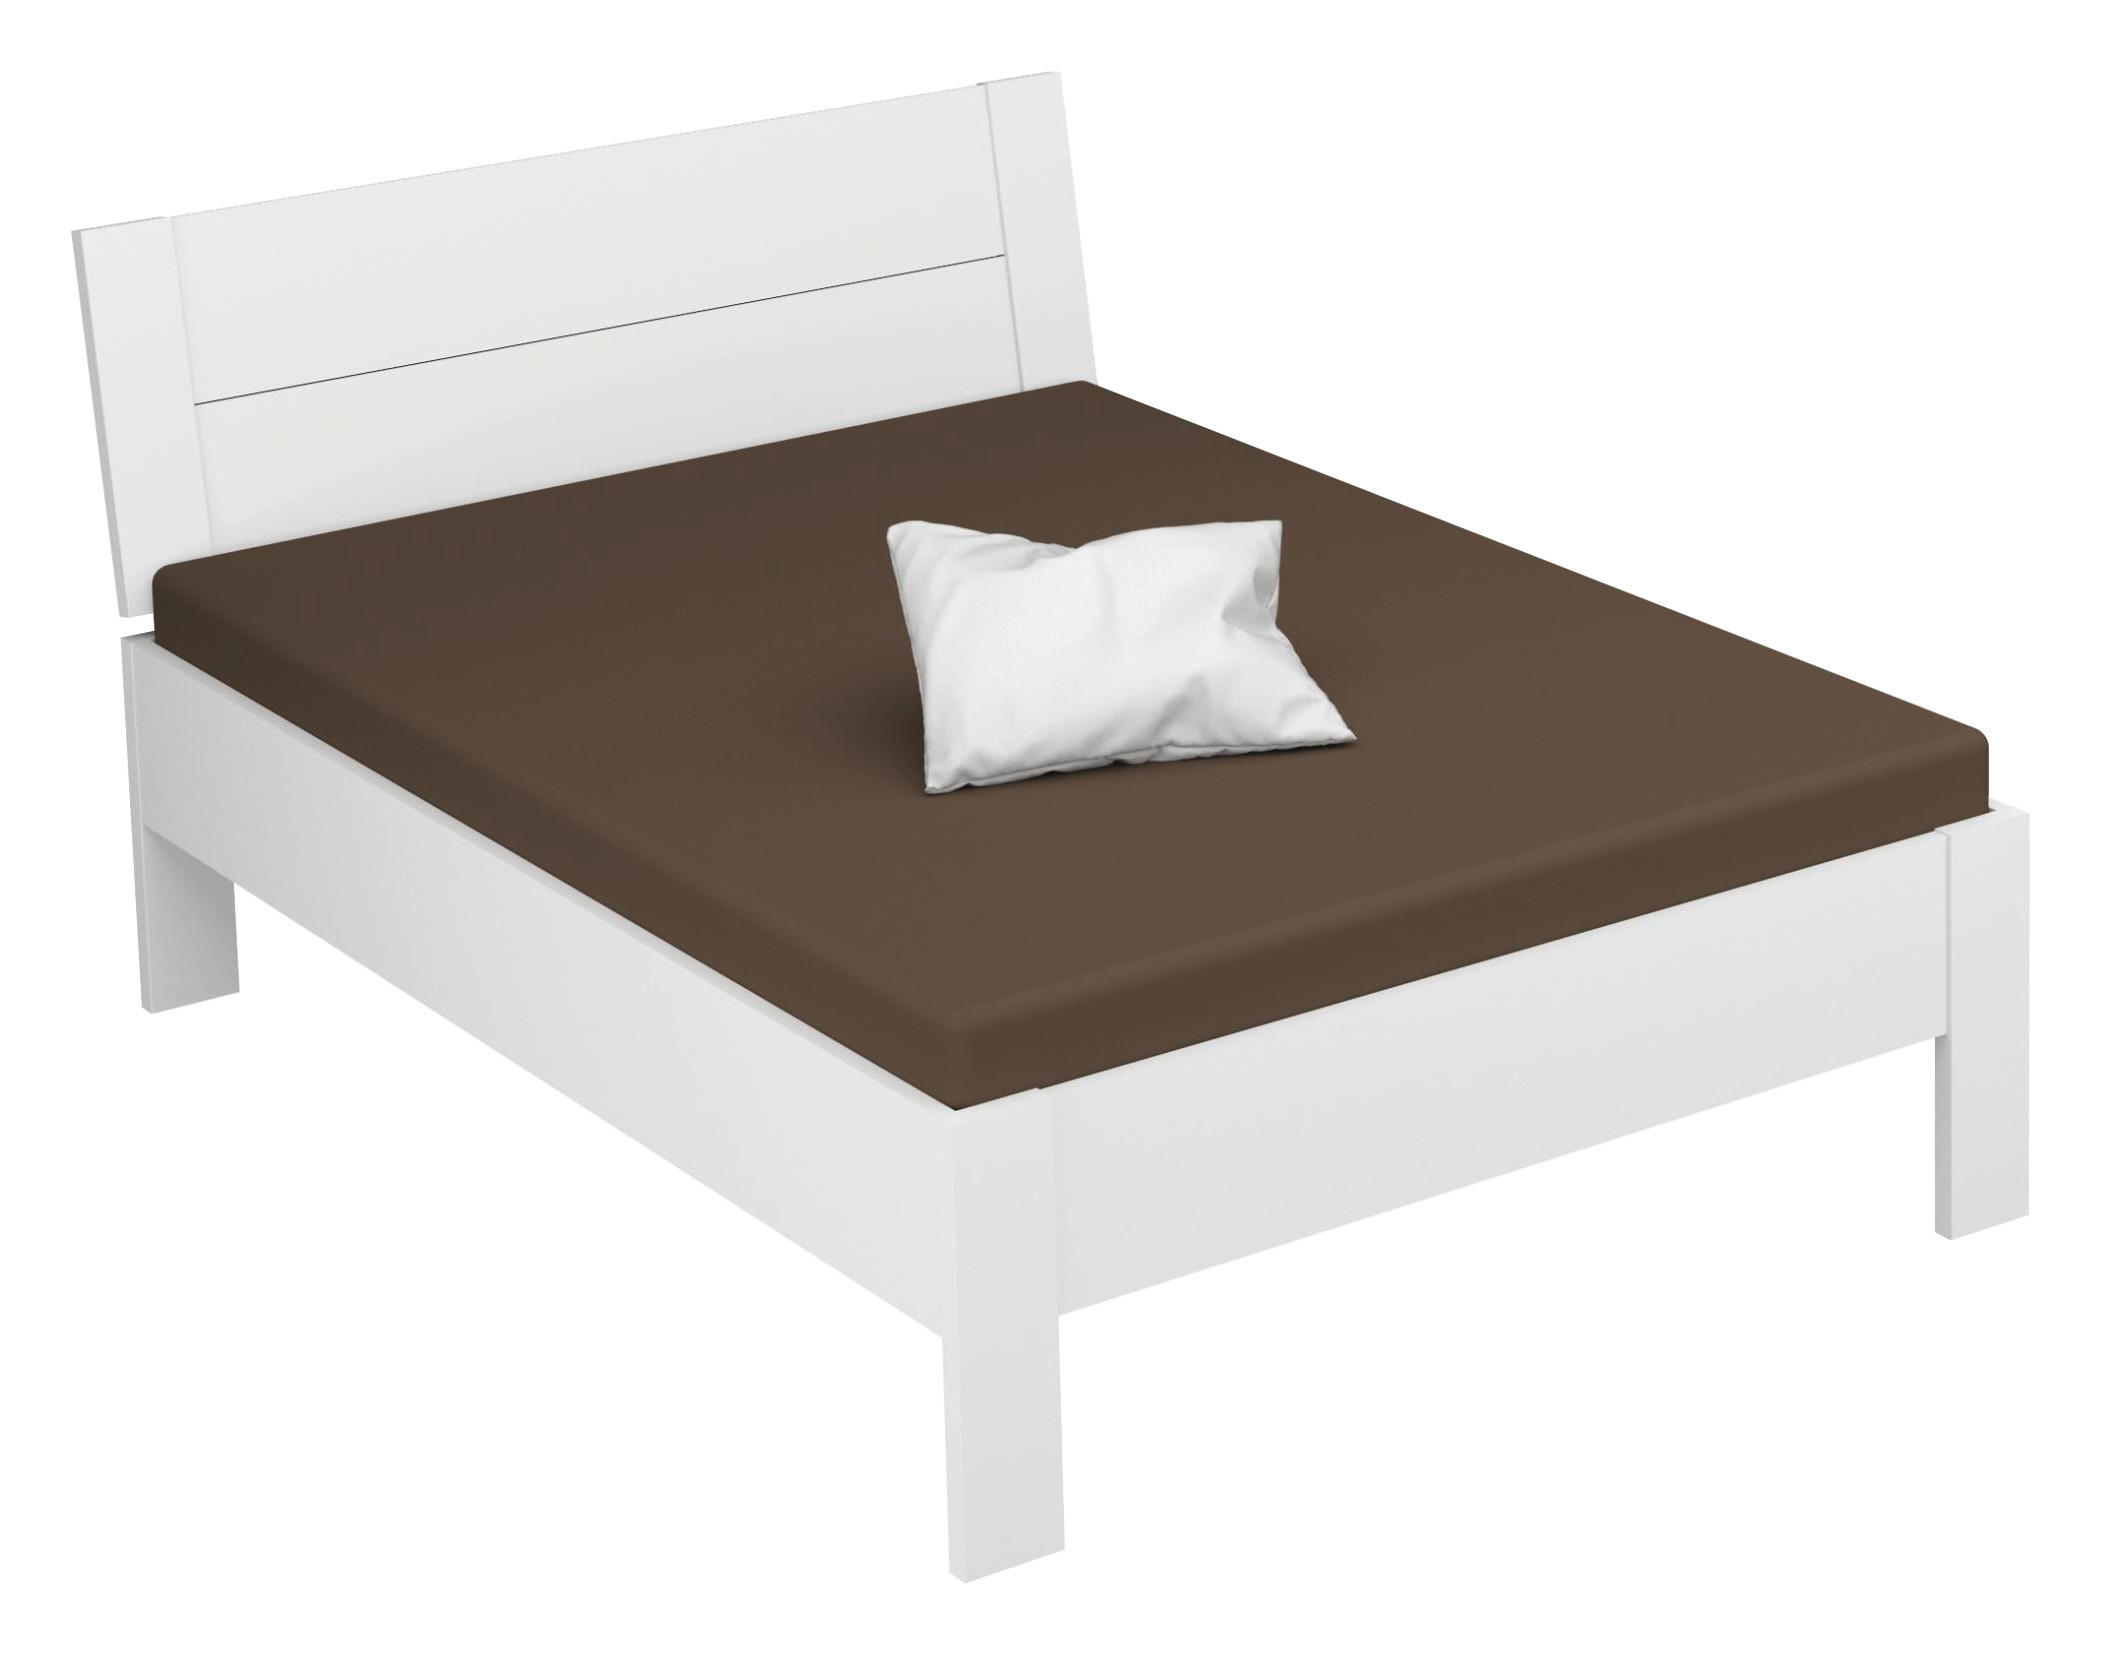 BETT ADITIO BEDS 140/200 cm Weiß  - Weiß, Design (140/200cm) - Xora